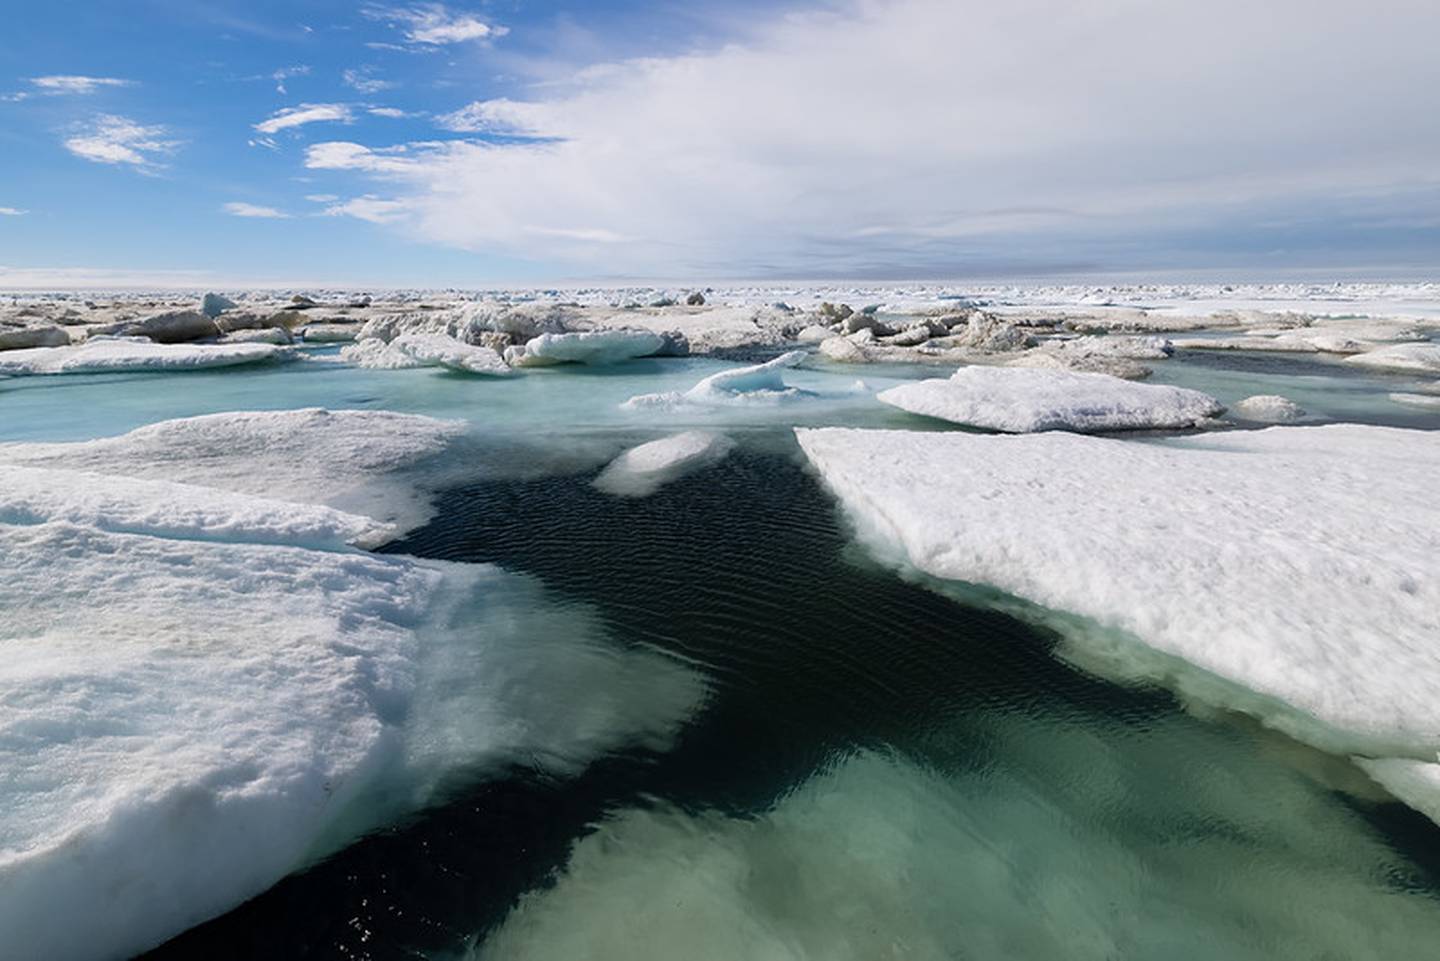 Sea ice floe in the Chukchi Sea in July 2021